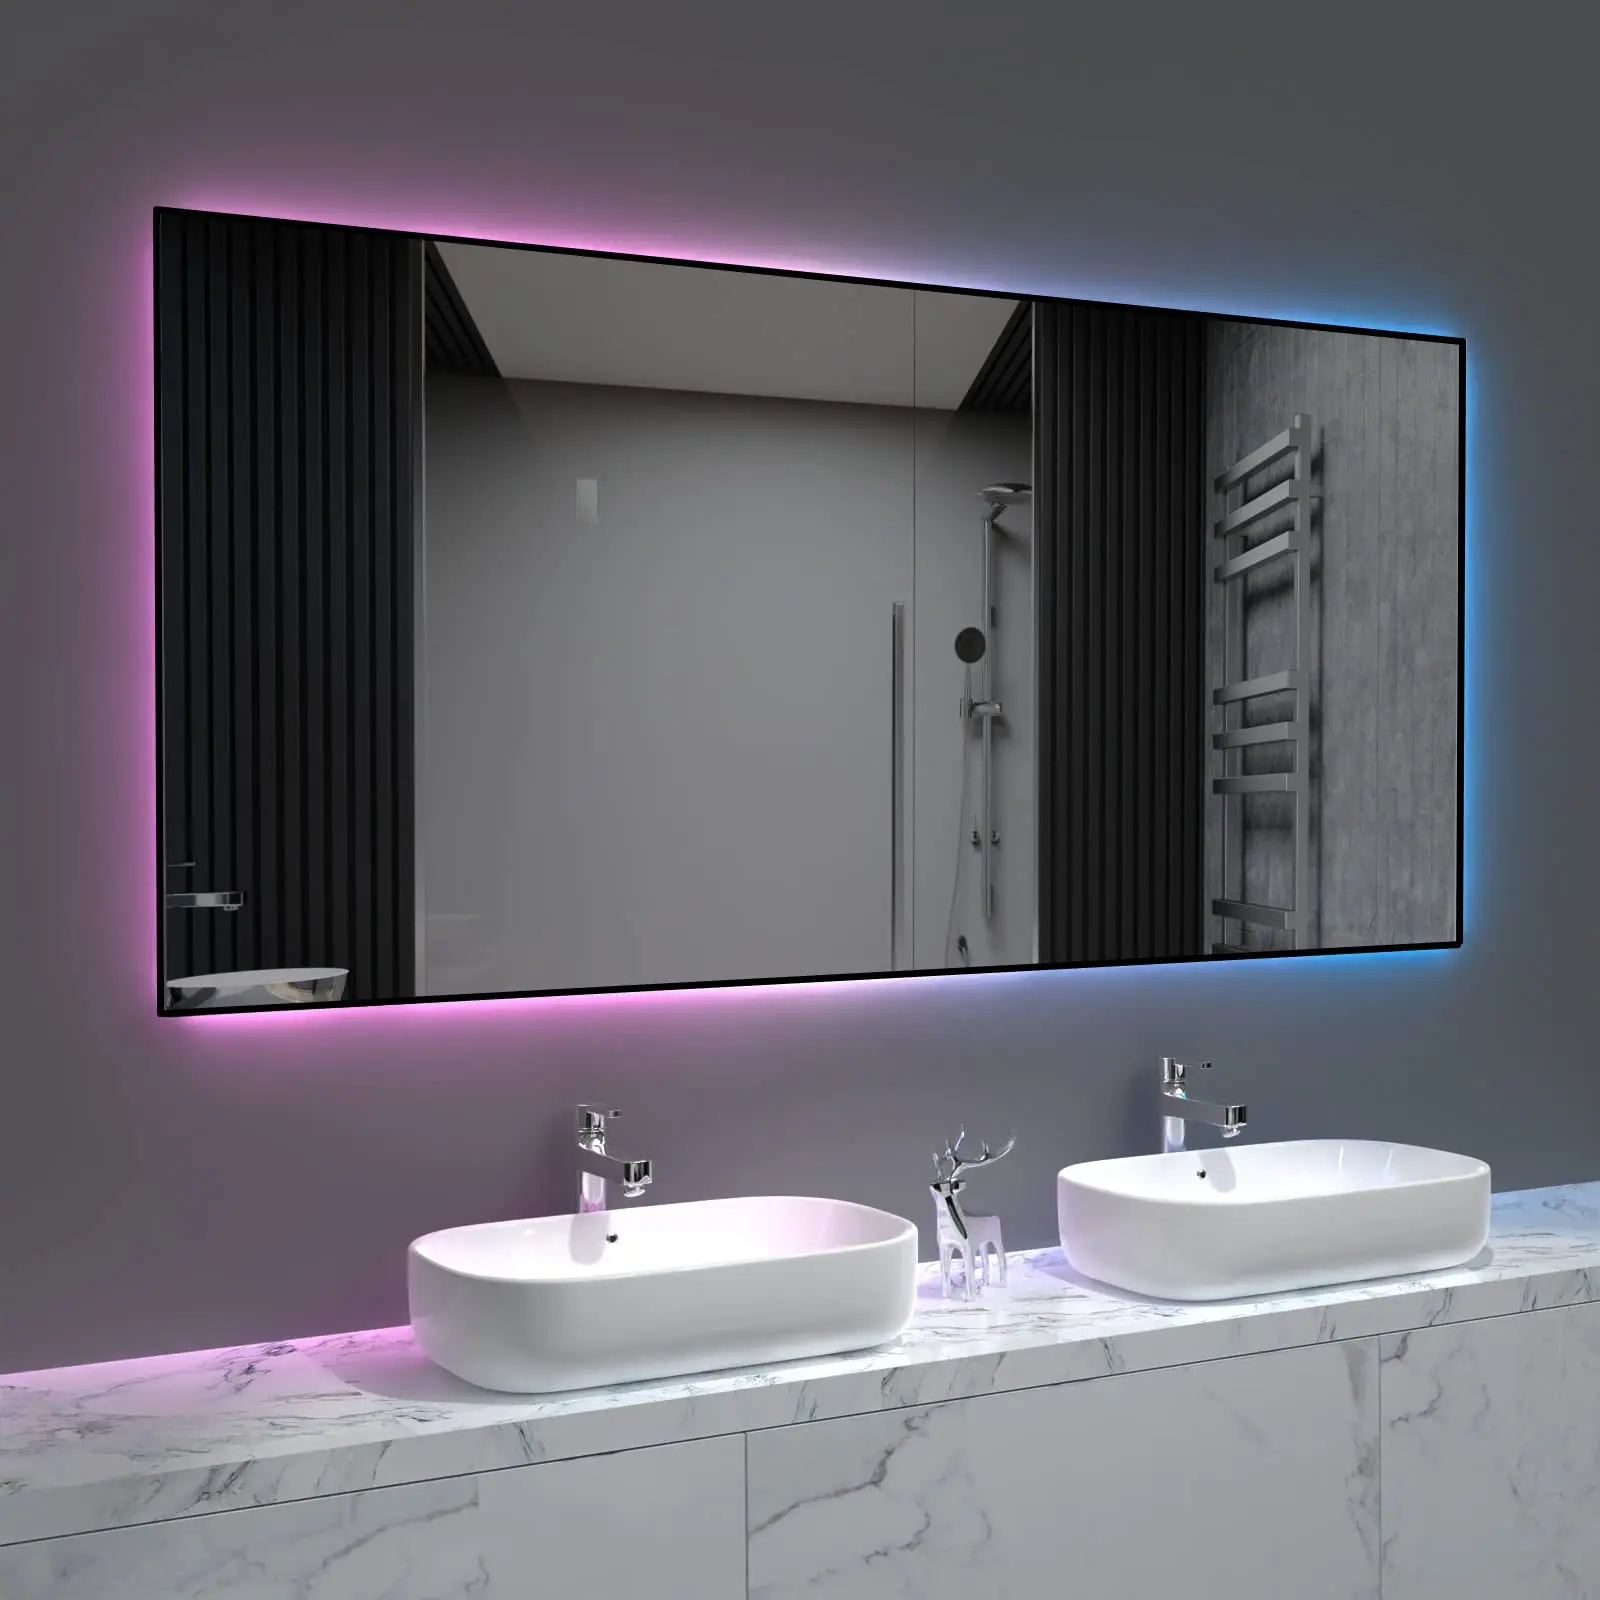  Современные китайские зеркала для ванной комнаты Анти-туман Светодиодное декоративное настенное зеркало Безрамные зеркала для ванной комнаты Производители